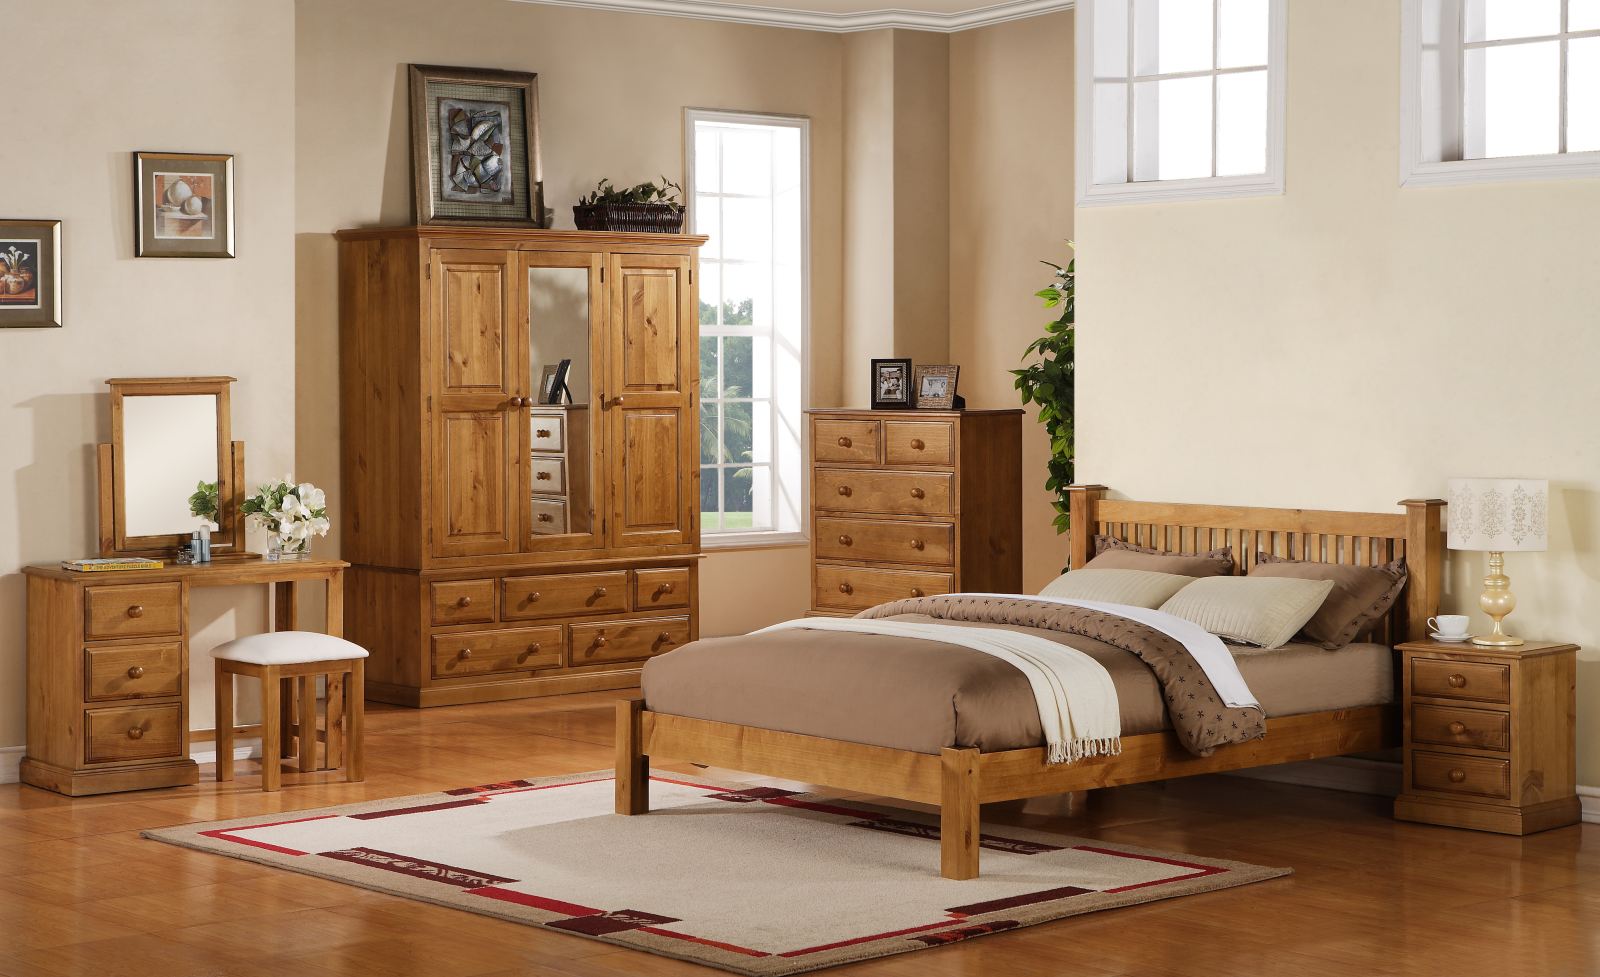 pine bedroom furniture design